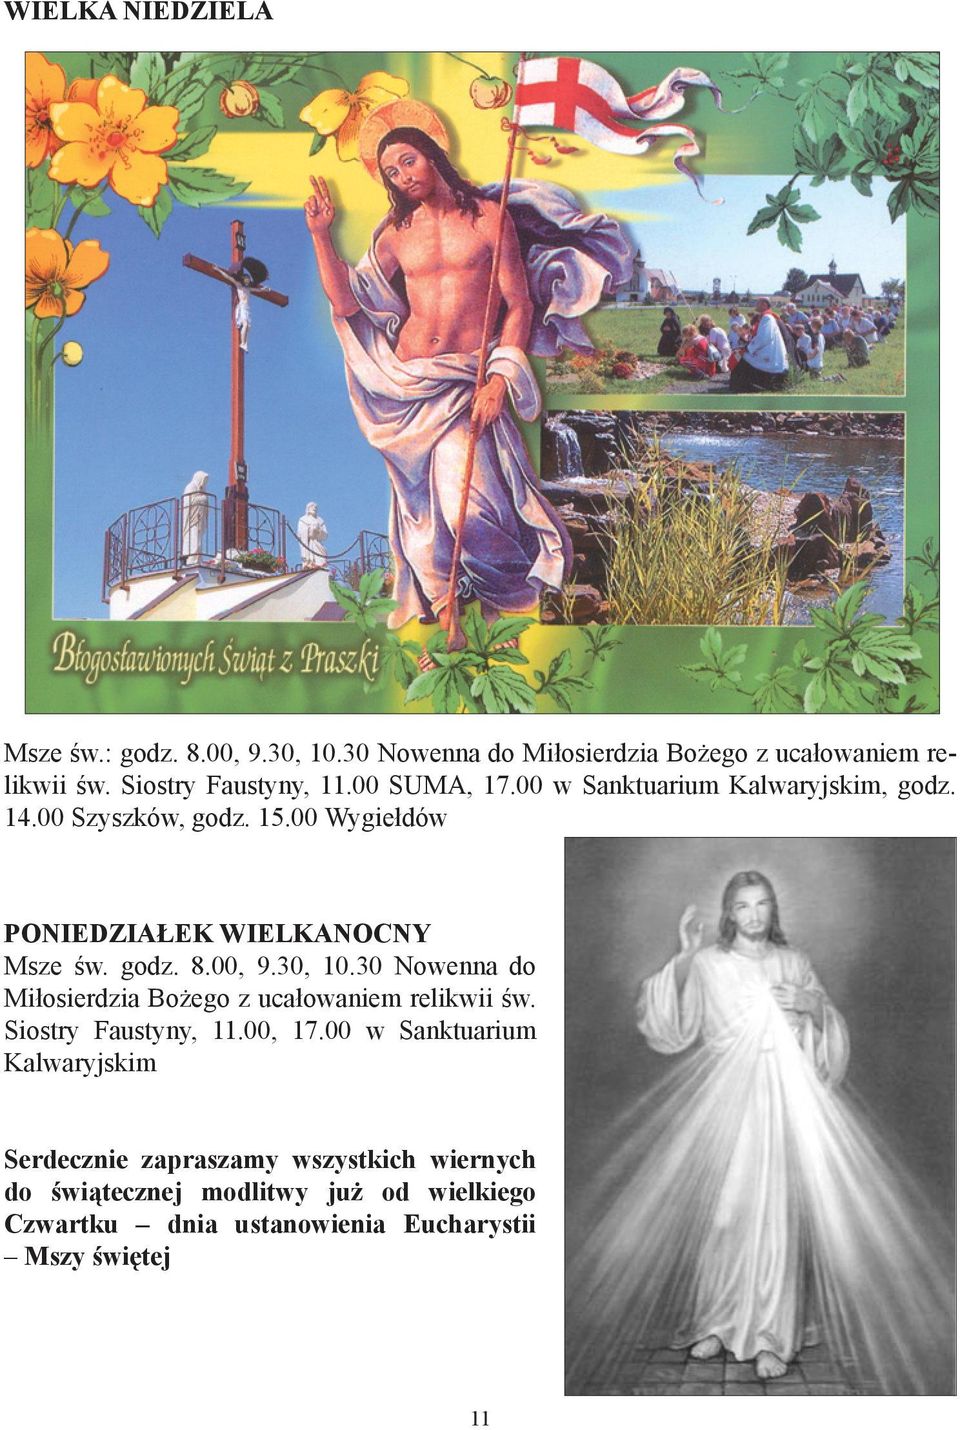 00, 9.30, 10.30 Nowenna do Miłosierdzia Bożego z ucałowaniem relikwii św. Siostry Faustyny, 11.00, 17.